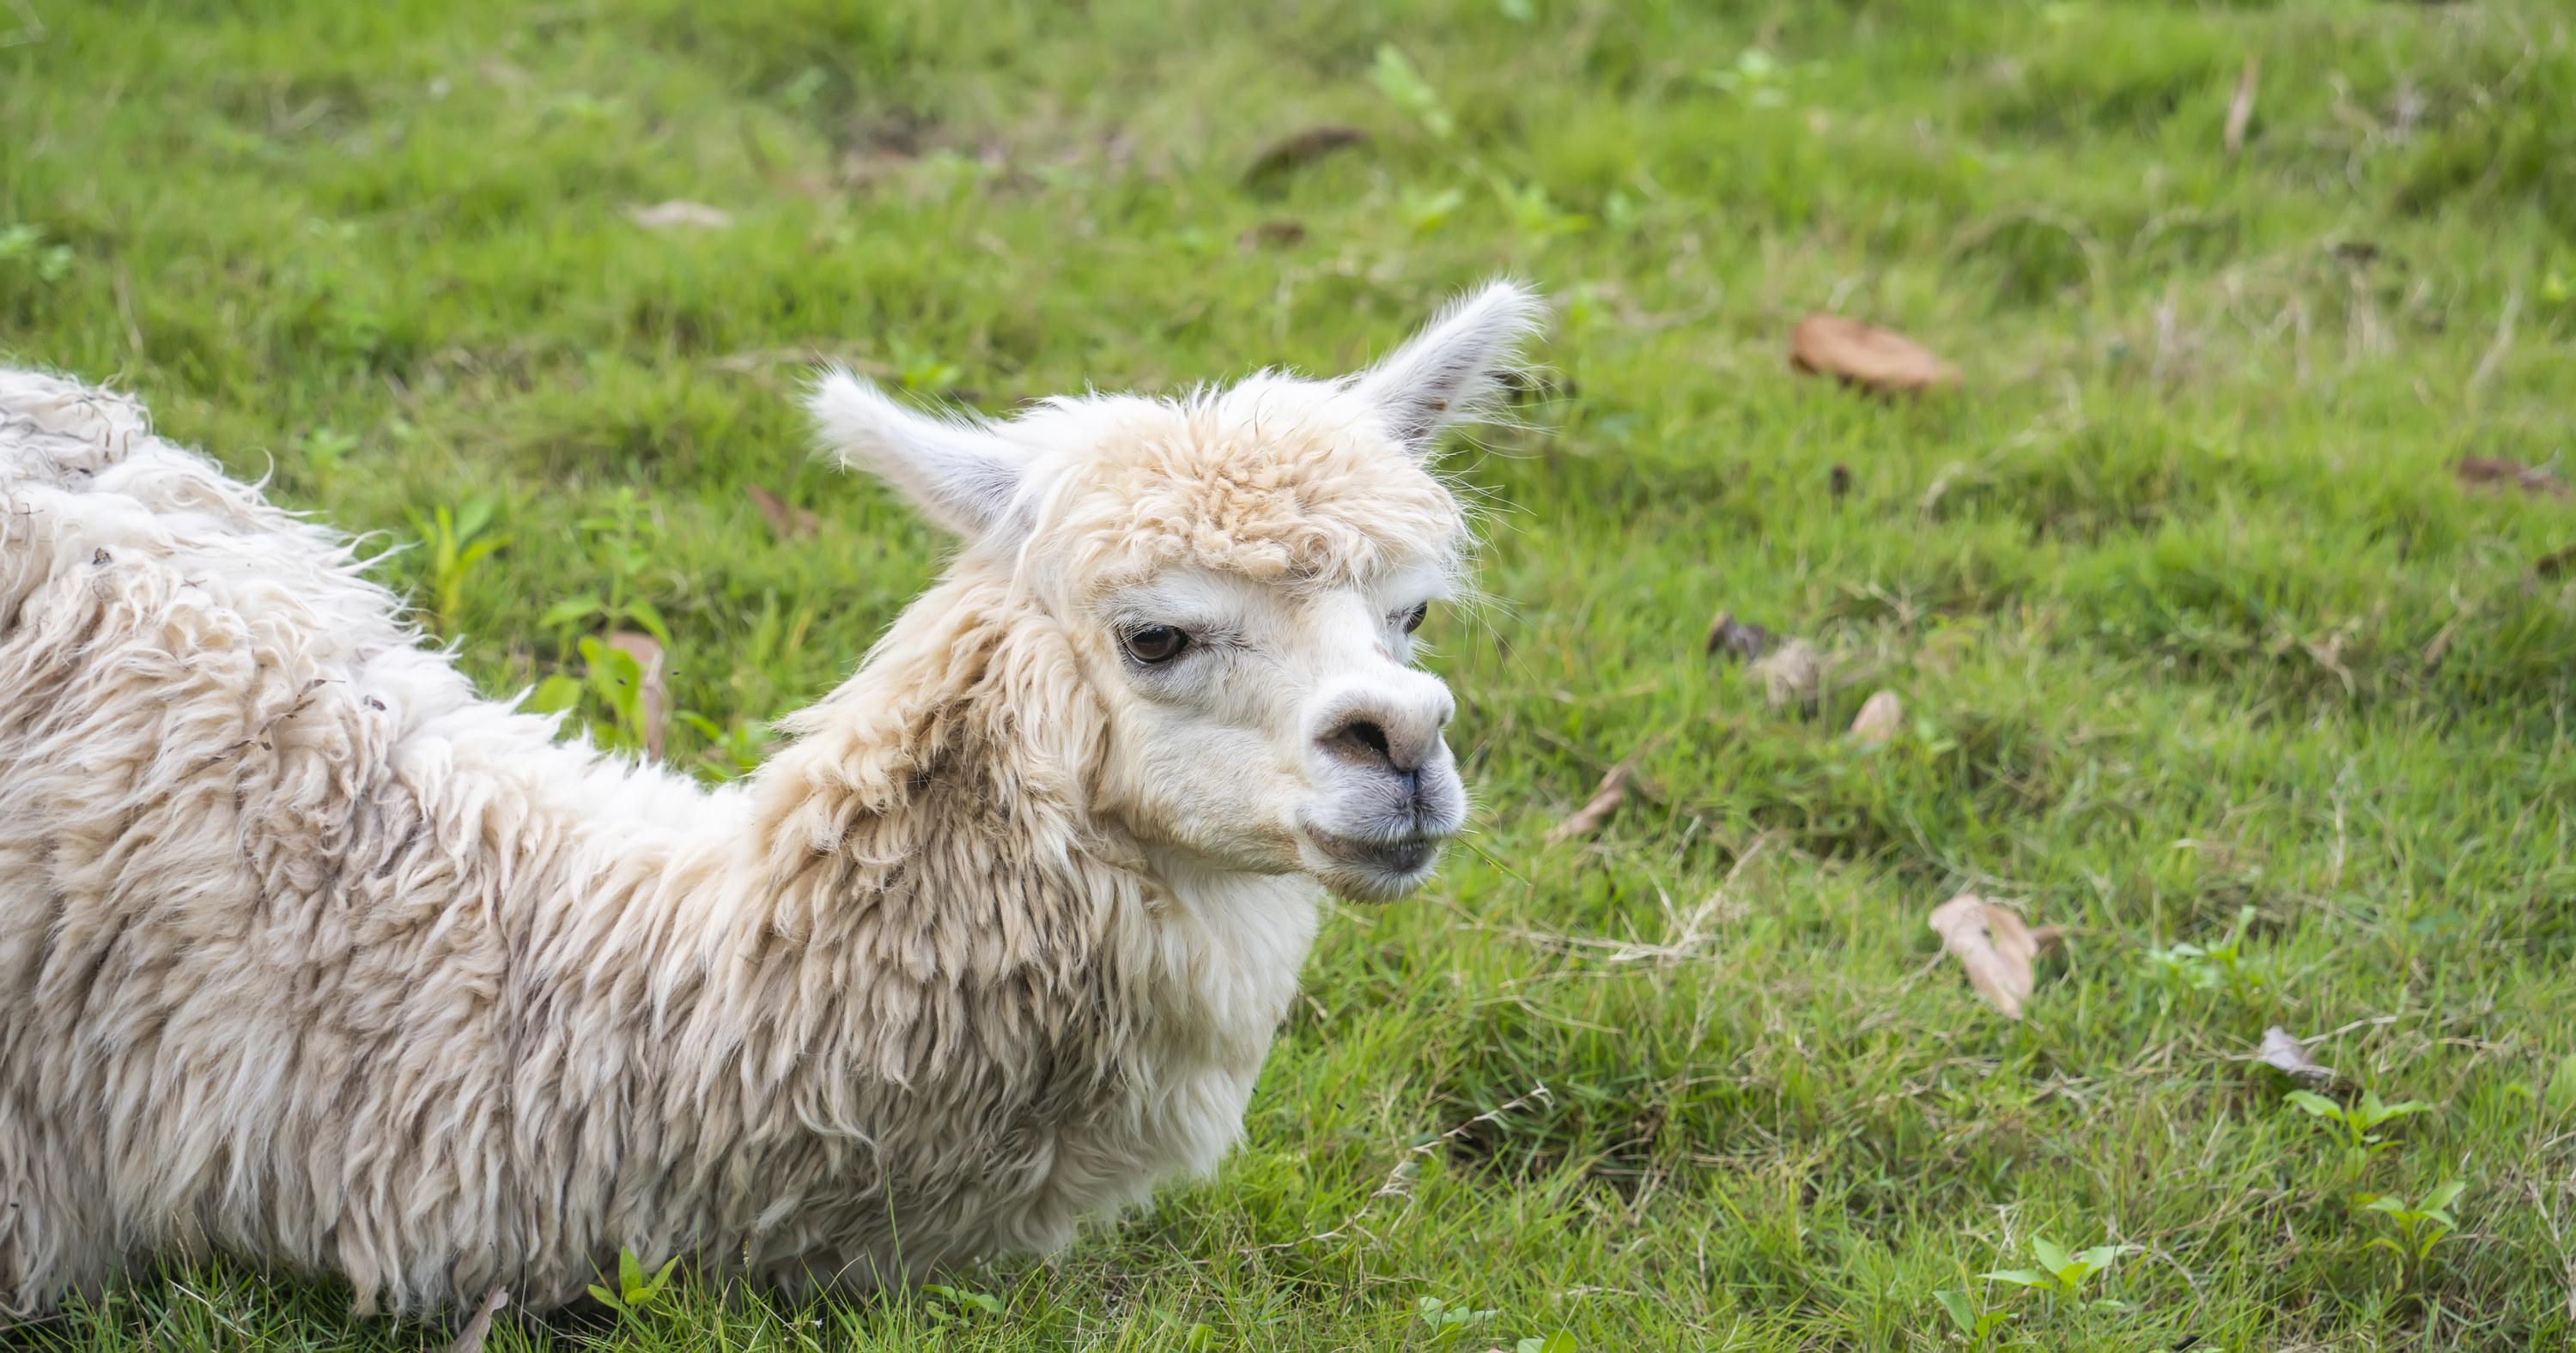 a llama sitting in grass